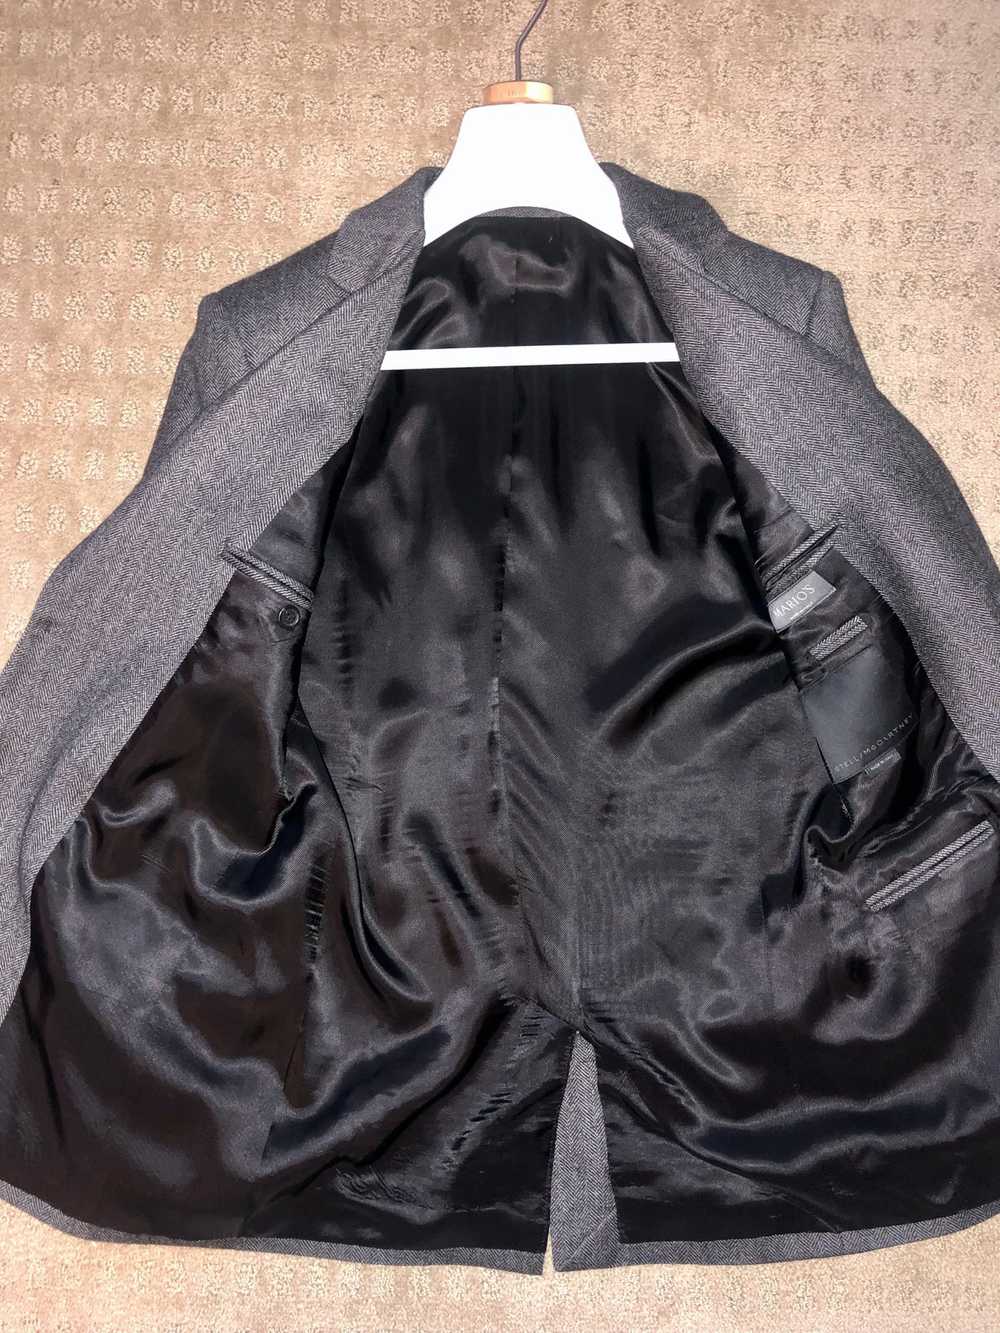 Stella McCartney Suit Jacket - image 4